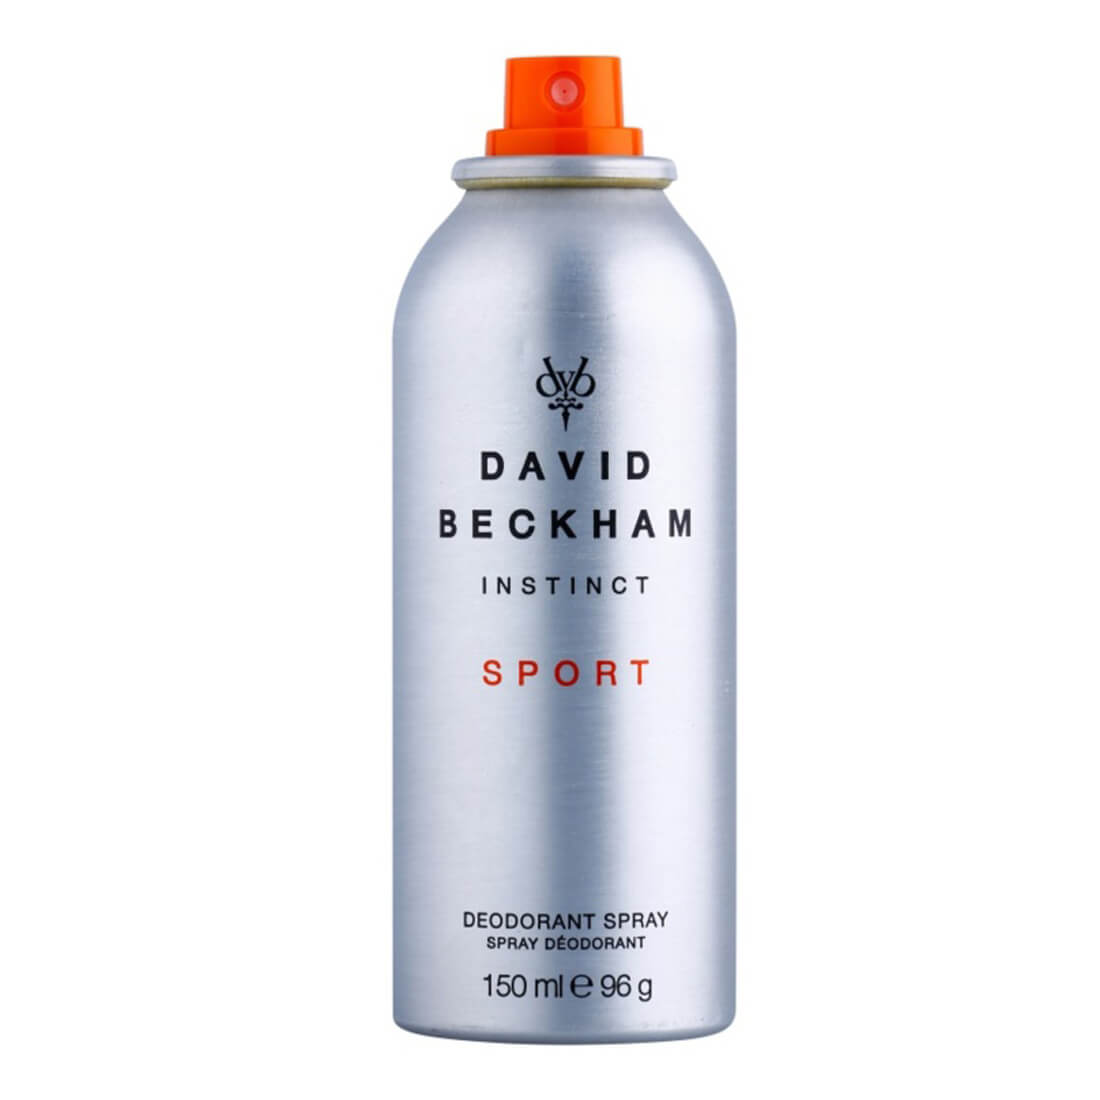 David Beckham Instinct Sport Deodorant For Men -150ml